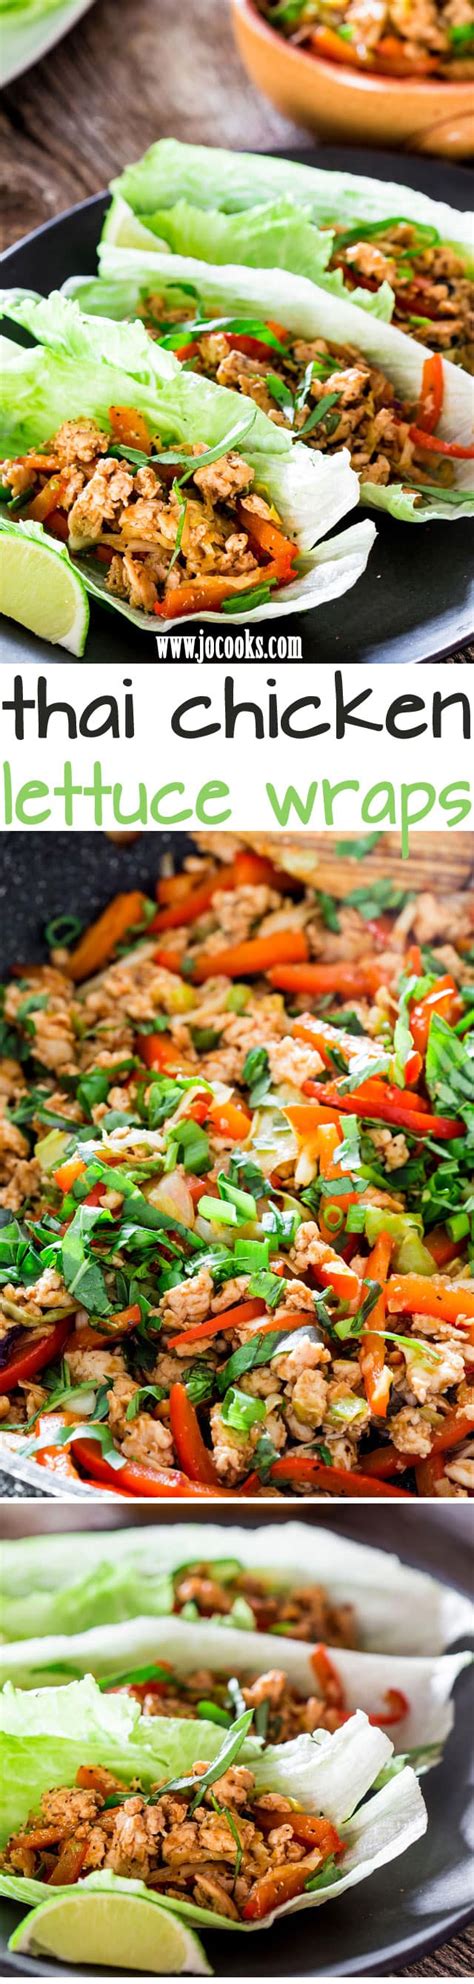 thai-chicken-lettuce-wraps-jo-cooks image